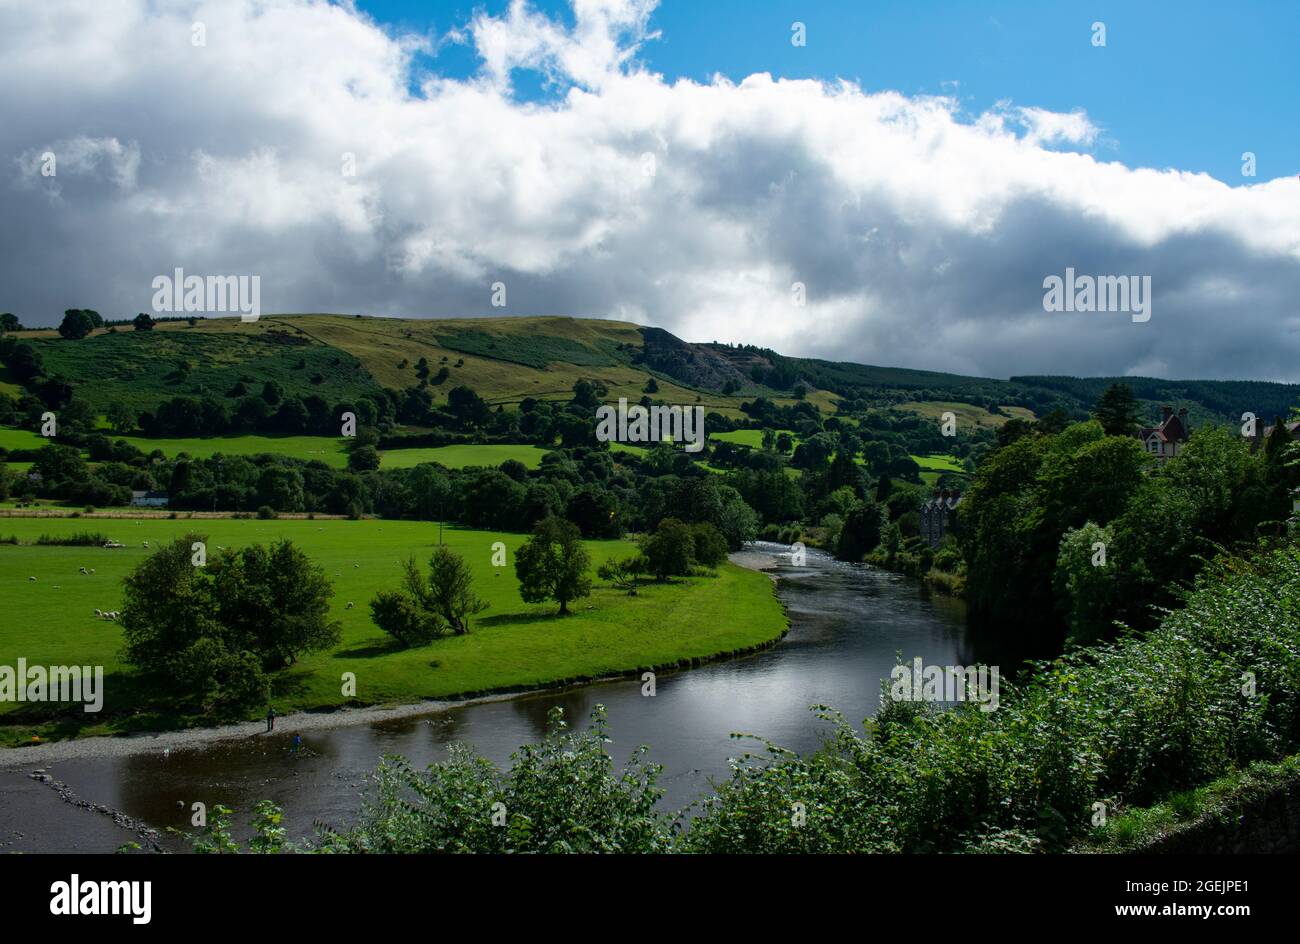 Dee River Valley, Wales. Schöne Landschaftsansicht auf idyllische Landschaft. Grüne Felder und Hügel mit dem anmutigen Fluss fließt. Walisische ländliche Szene. Stockfoto